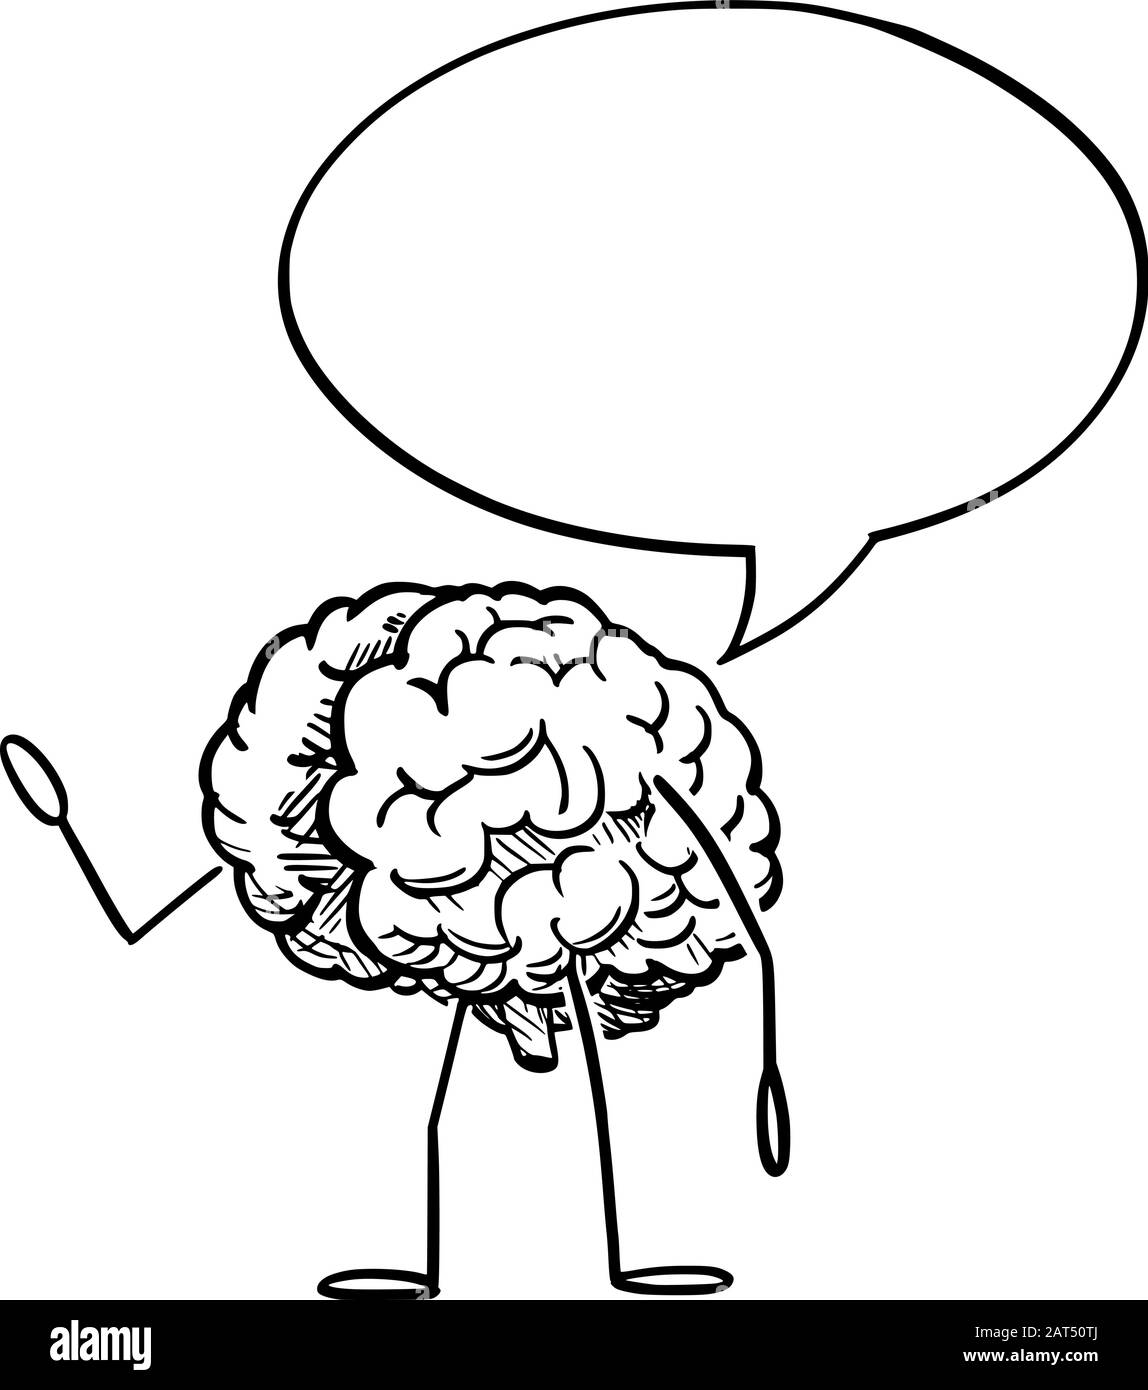 Illustrazione vettoriale del carattere umano del cervello del cartone animato con il linguaggio bubble.Creativity o la pubblicità di idea o la progettazione di vendita. Illustrazione Vettoriale